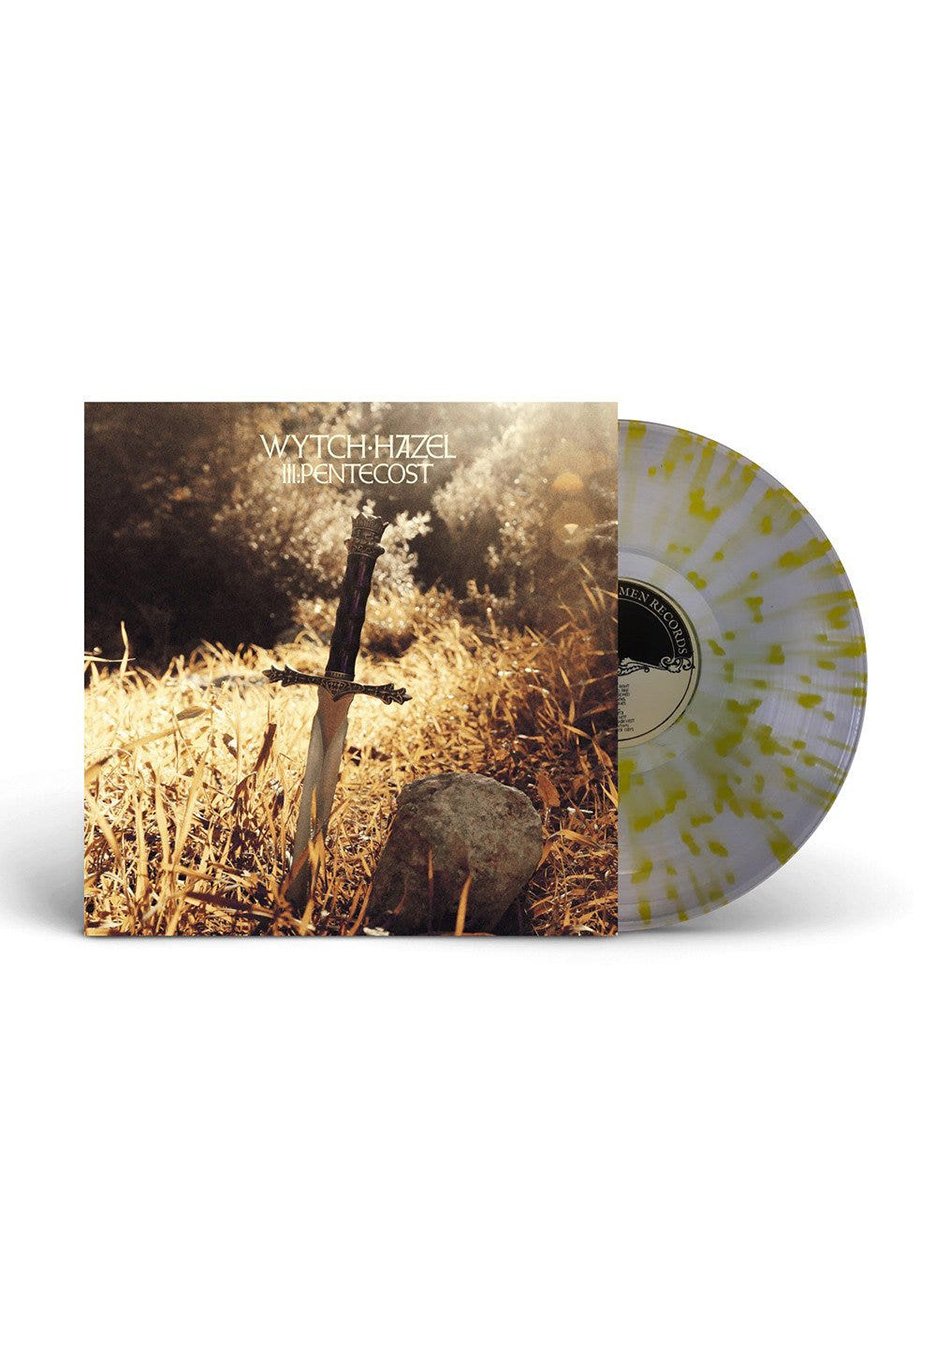 Wytch Hazel - III: Pentecost Clear Yellow - Splattered Vinyl